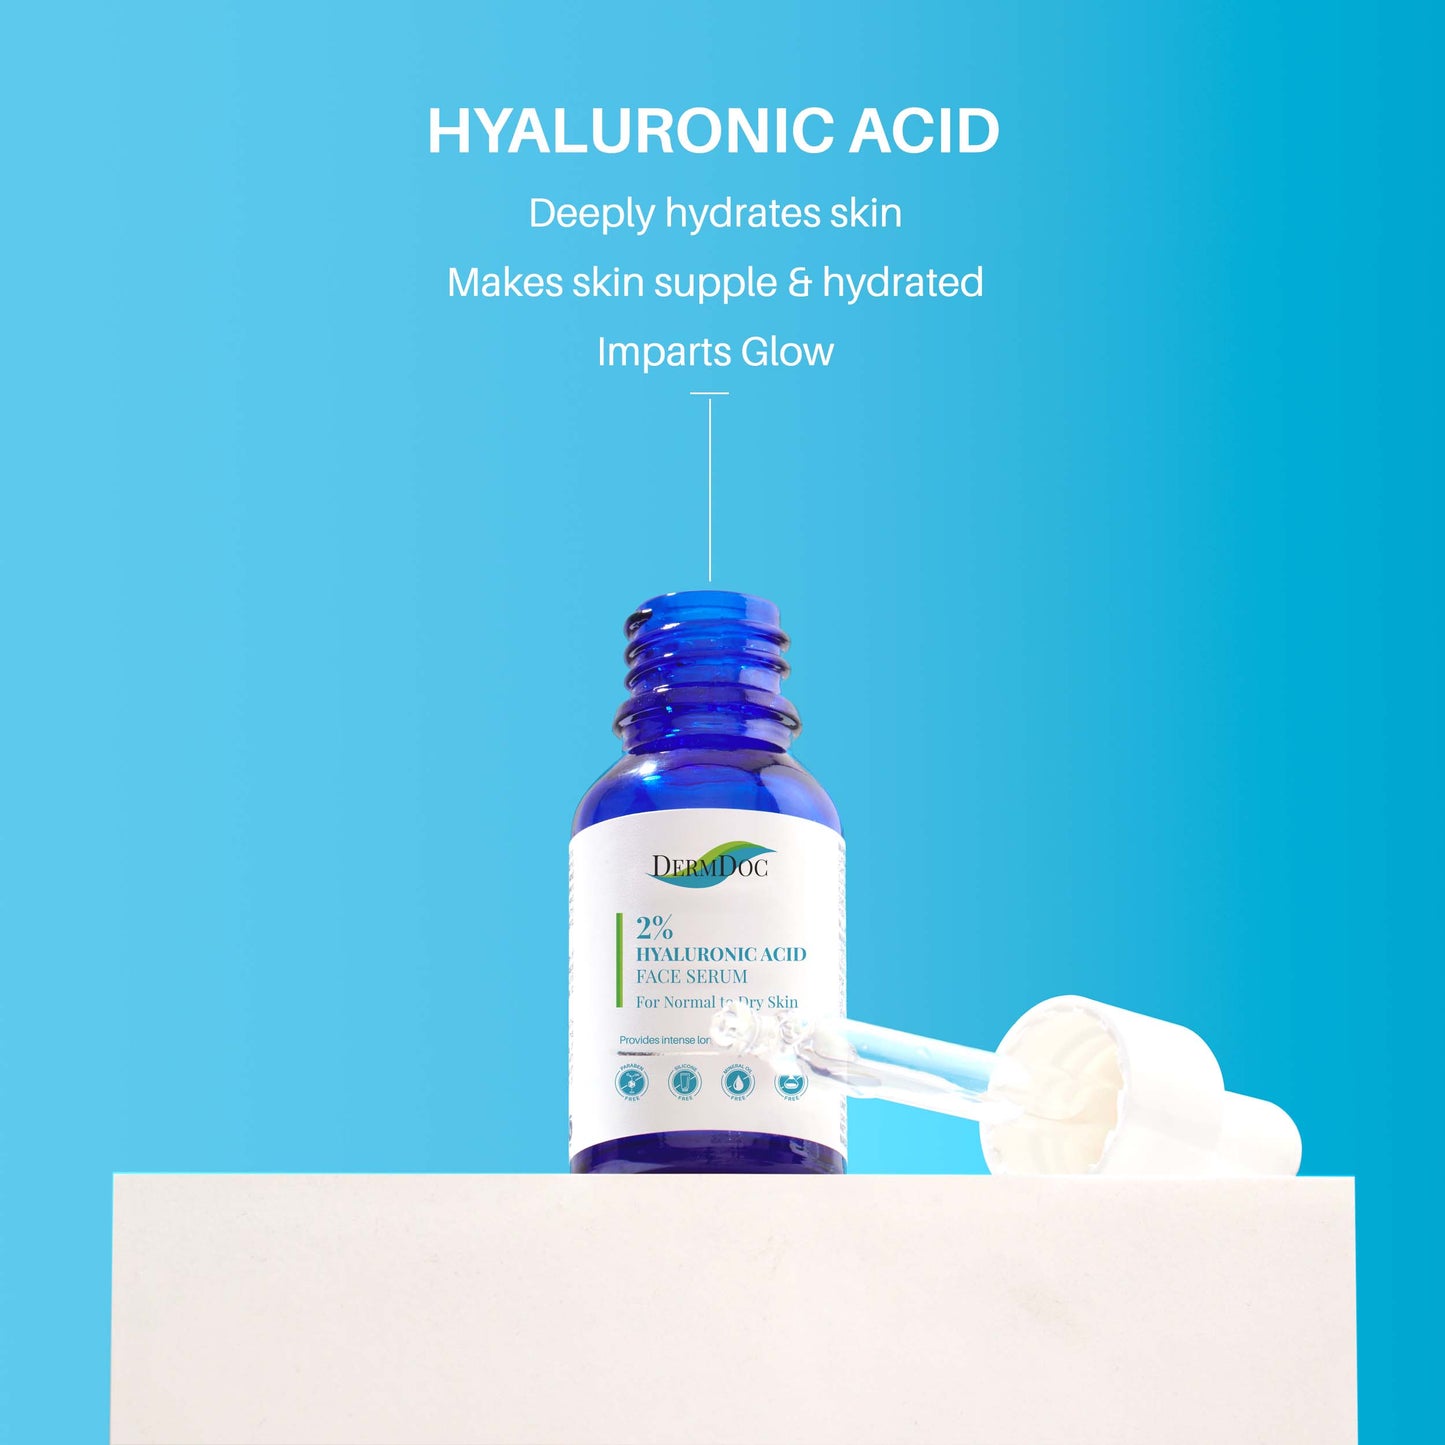 Dermdoc 2% Hyaluronic Acid Face Serum for Dry Skin (15 ml)